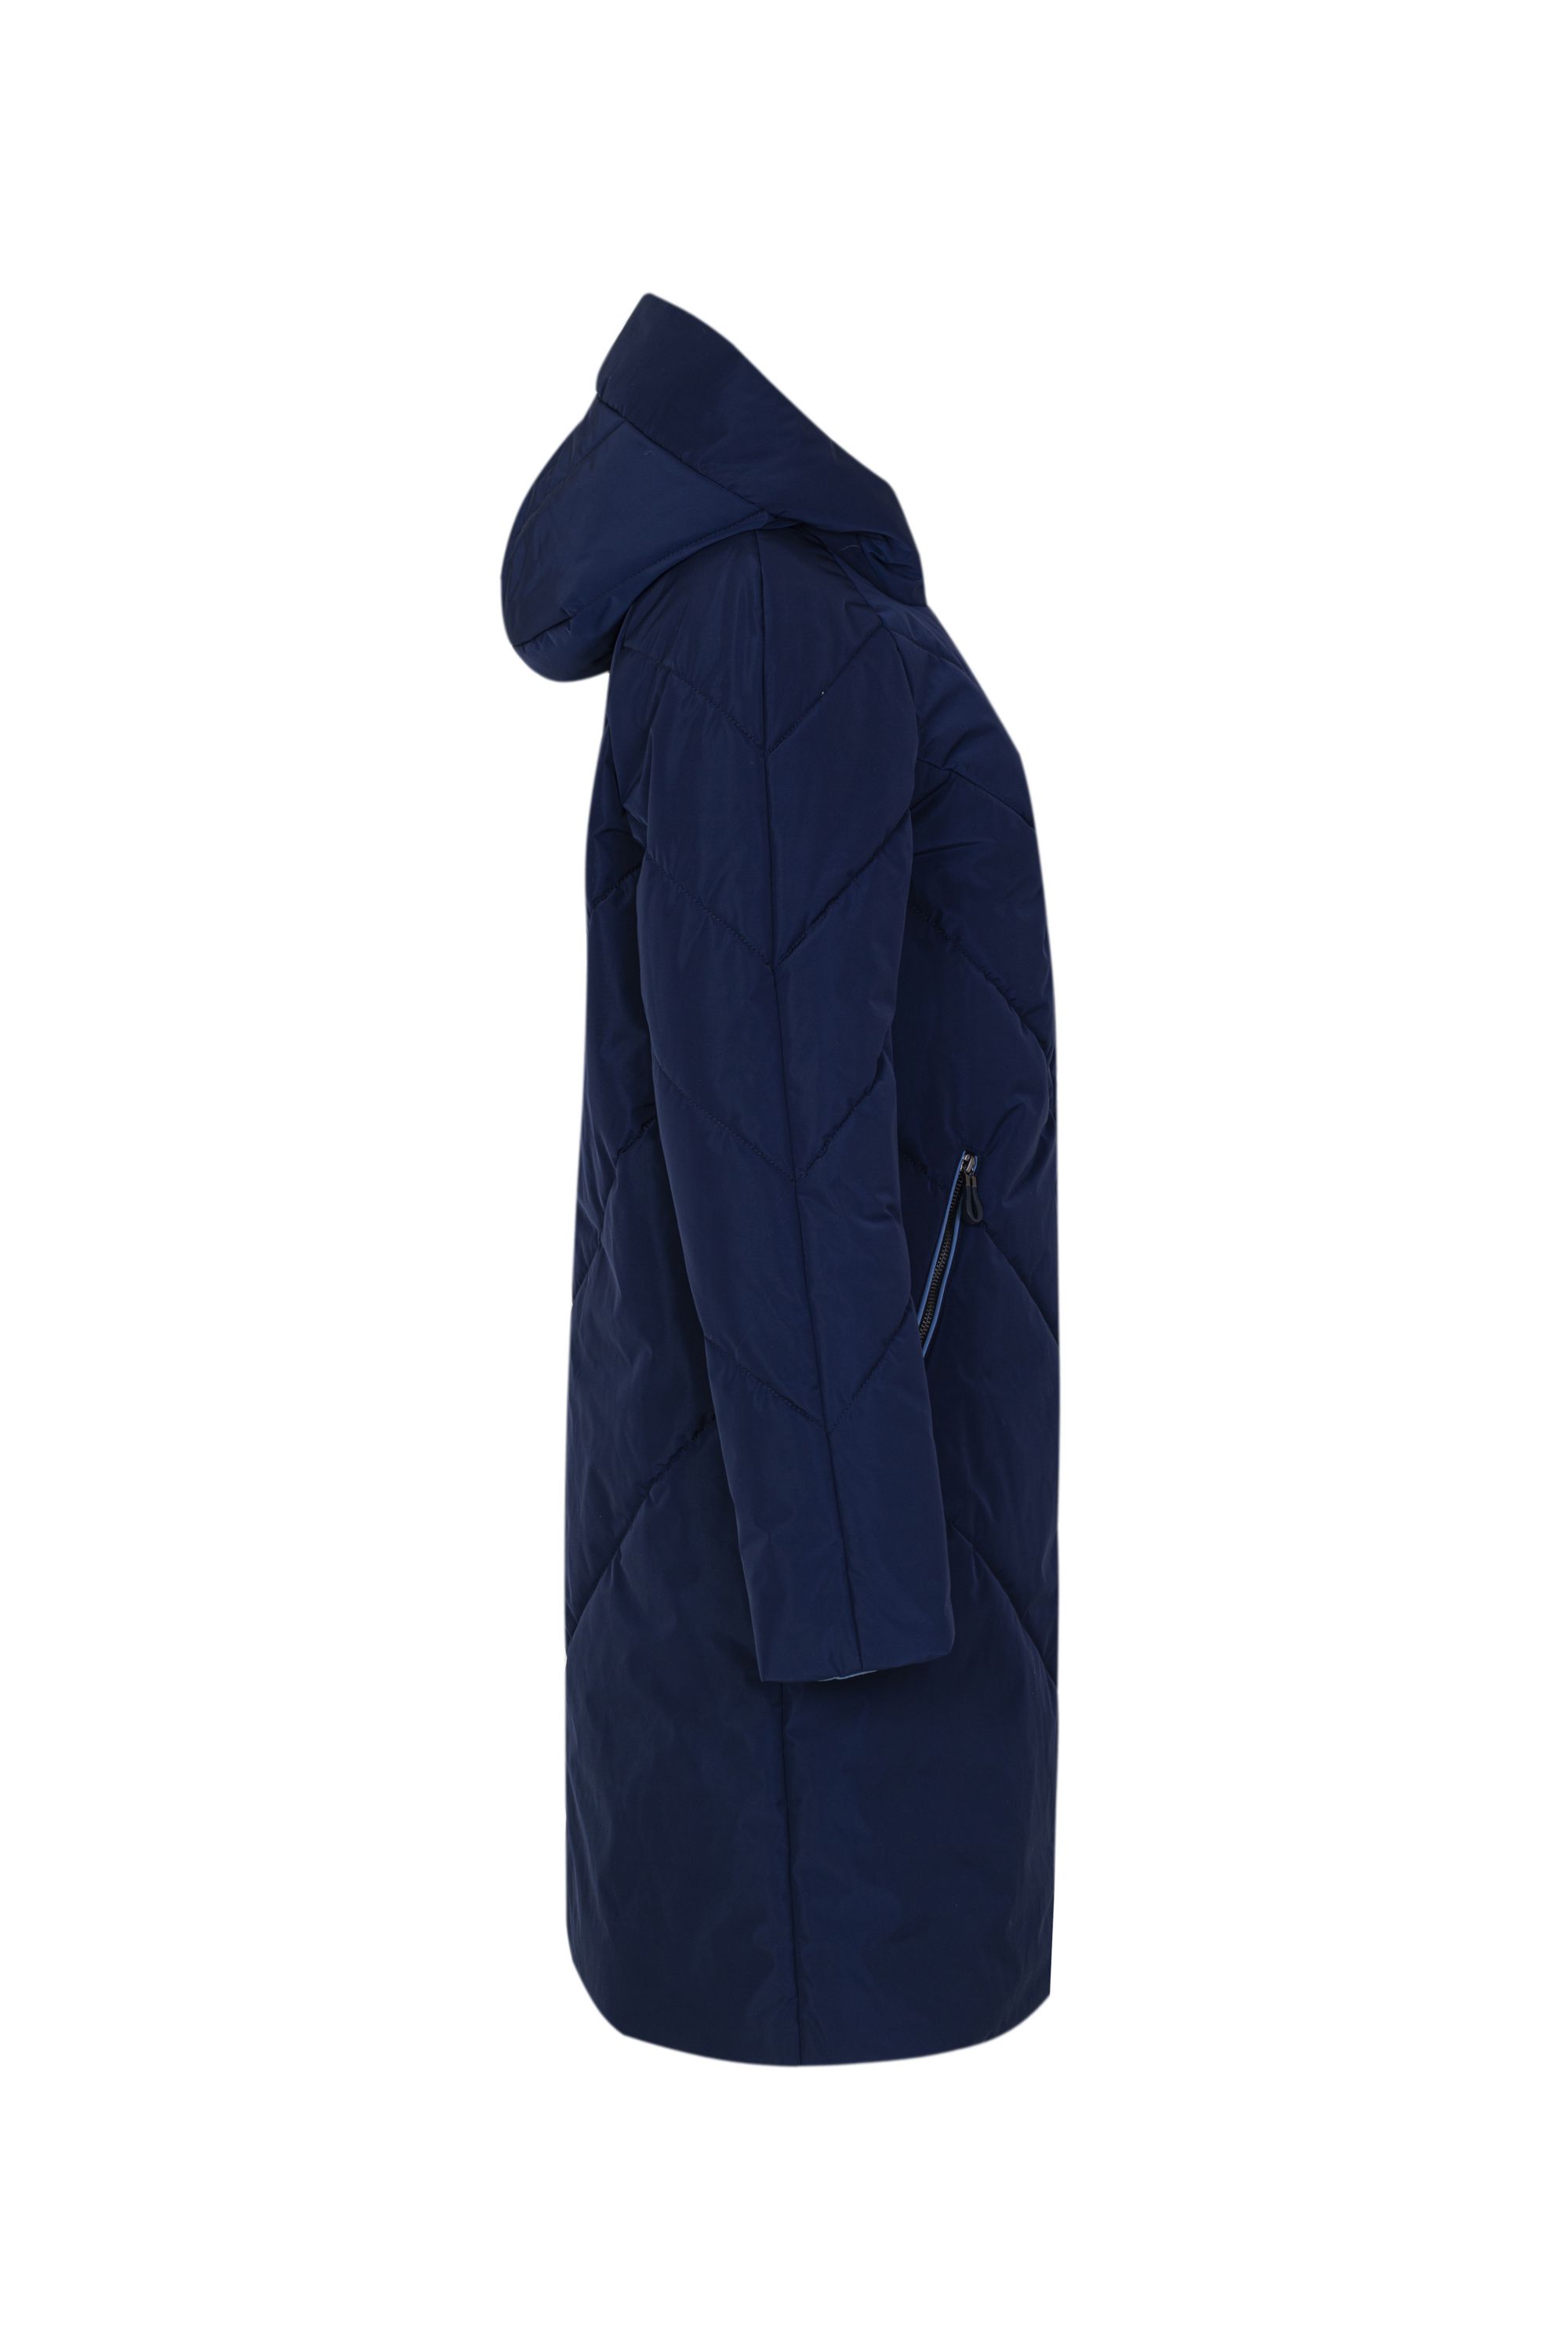 Пальто женское плащевое утепленное 5-9196-4